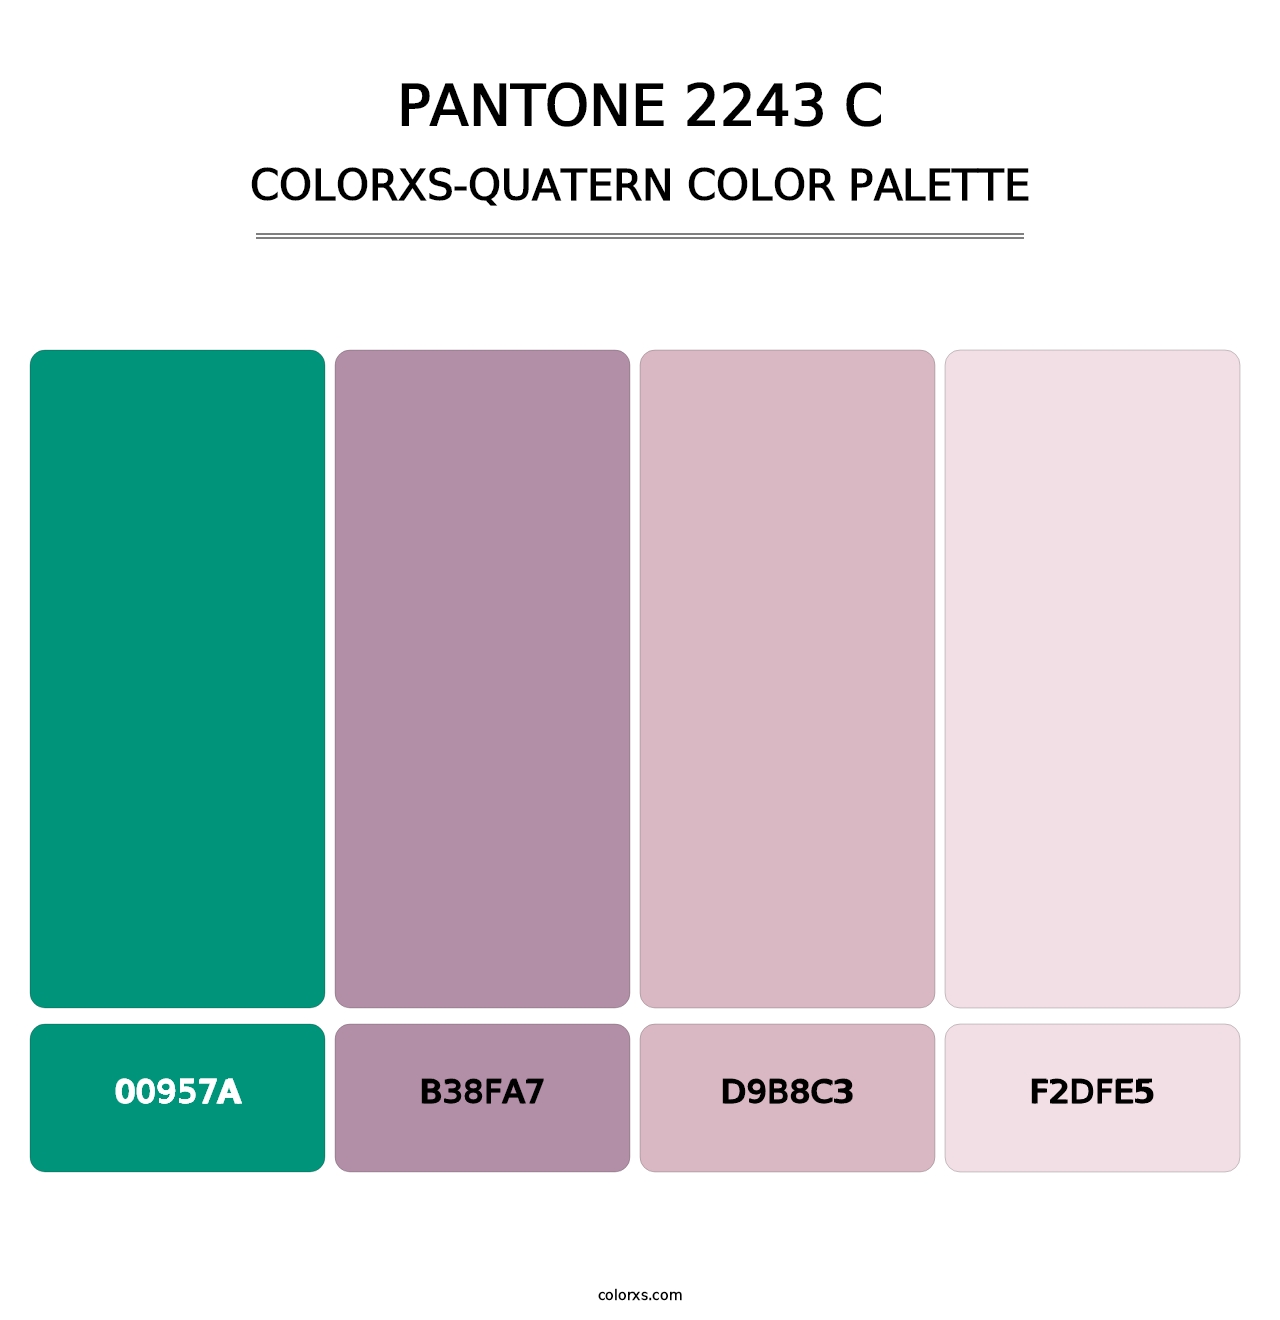 PANTONE 2243 C - Colorxs Quatern Palette